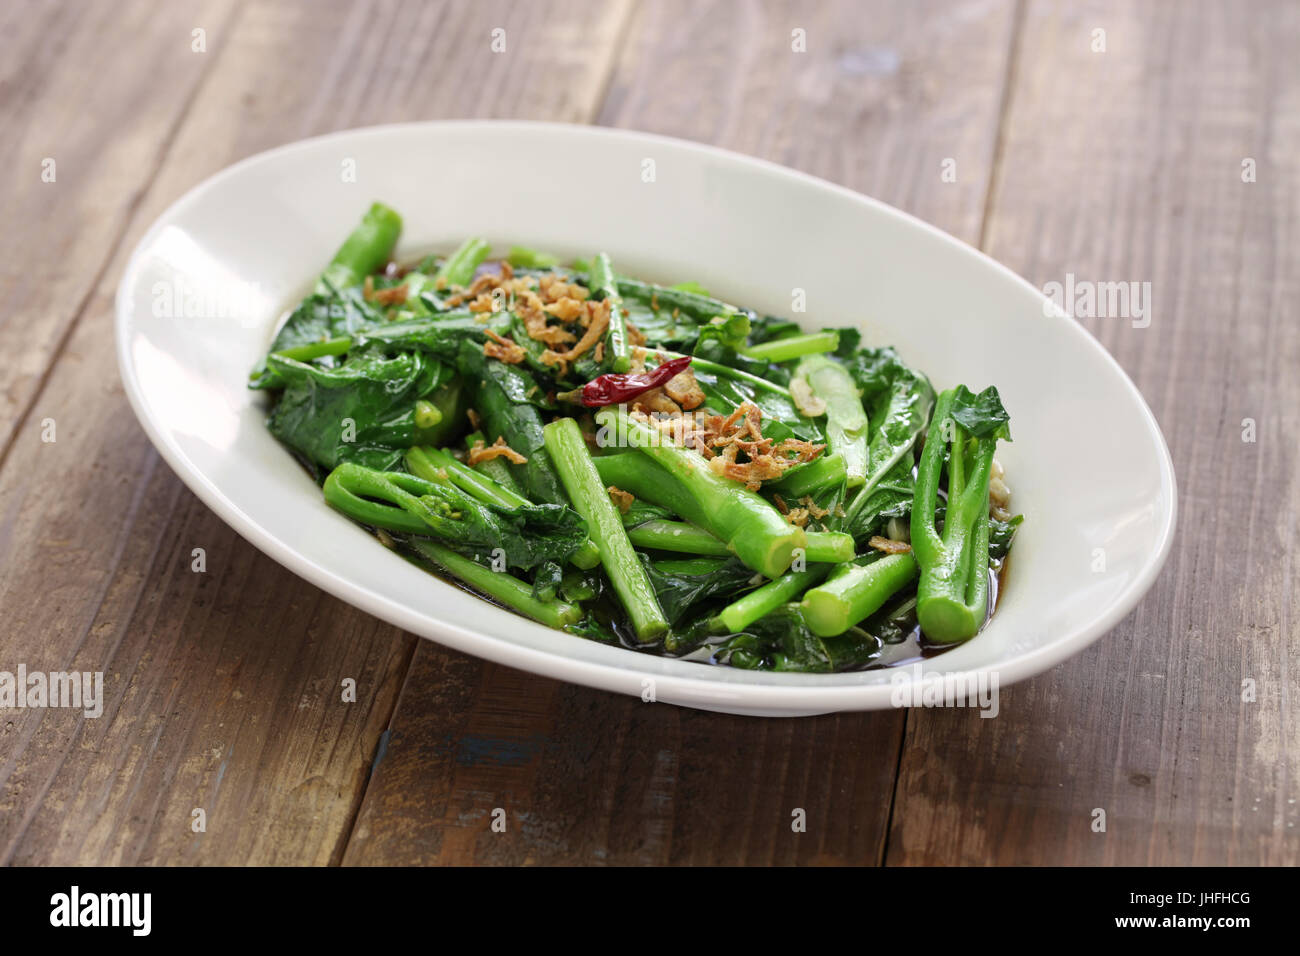 unter Rühren gebraten Chinesisch Kale (chinesischer Brokkoli) mit Austernsauce Stockfoto